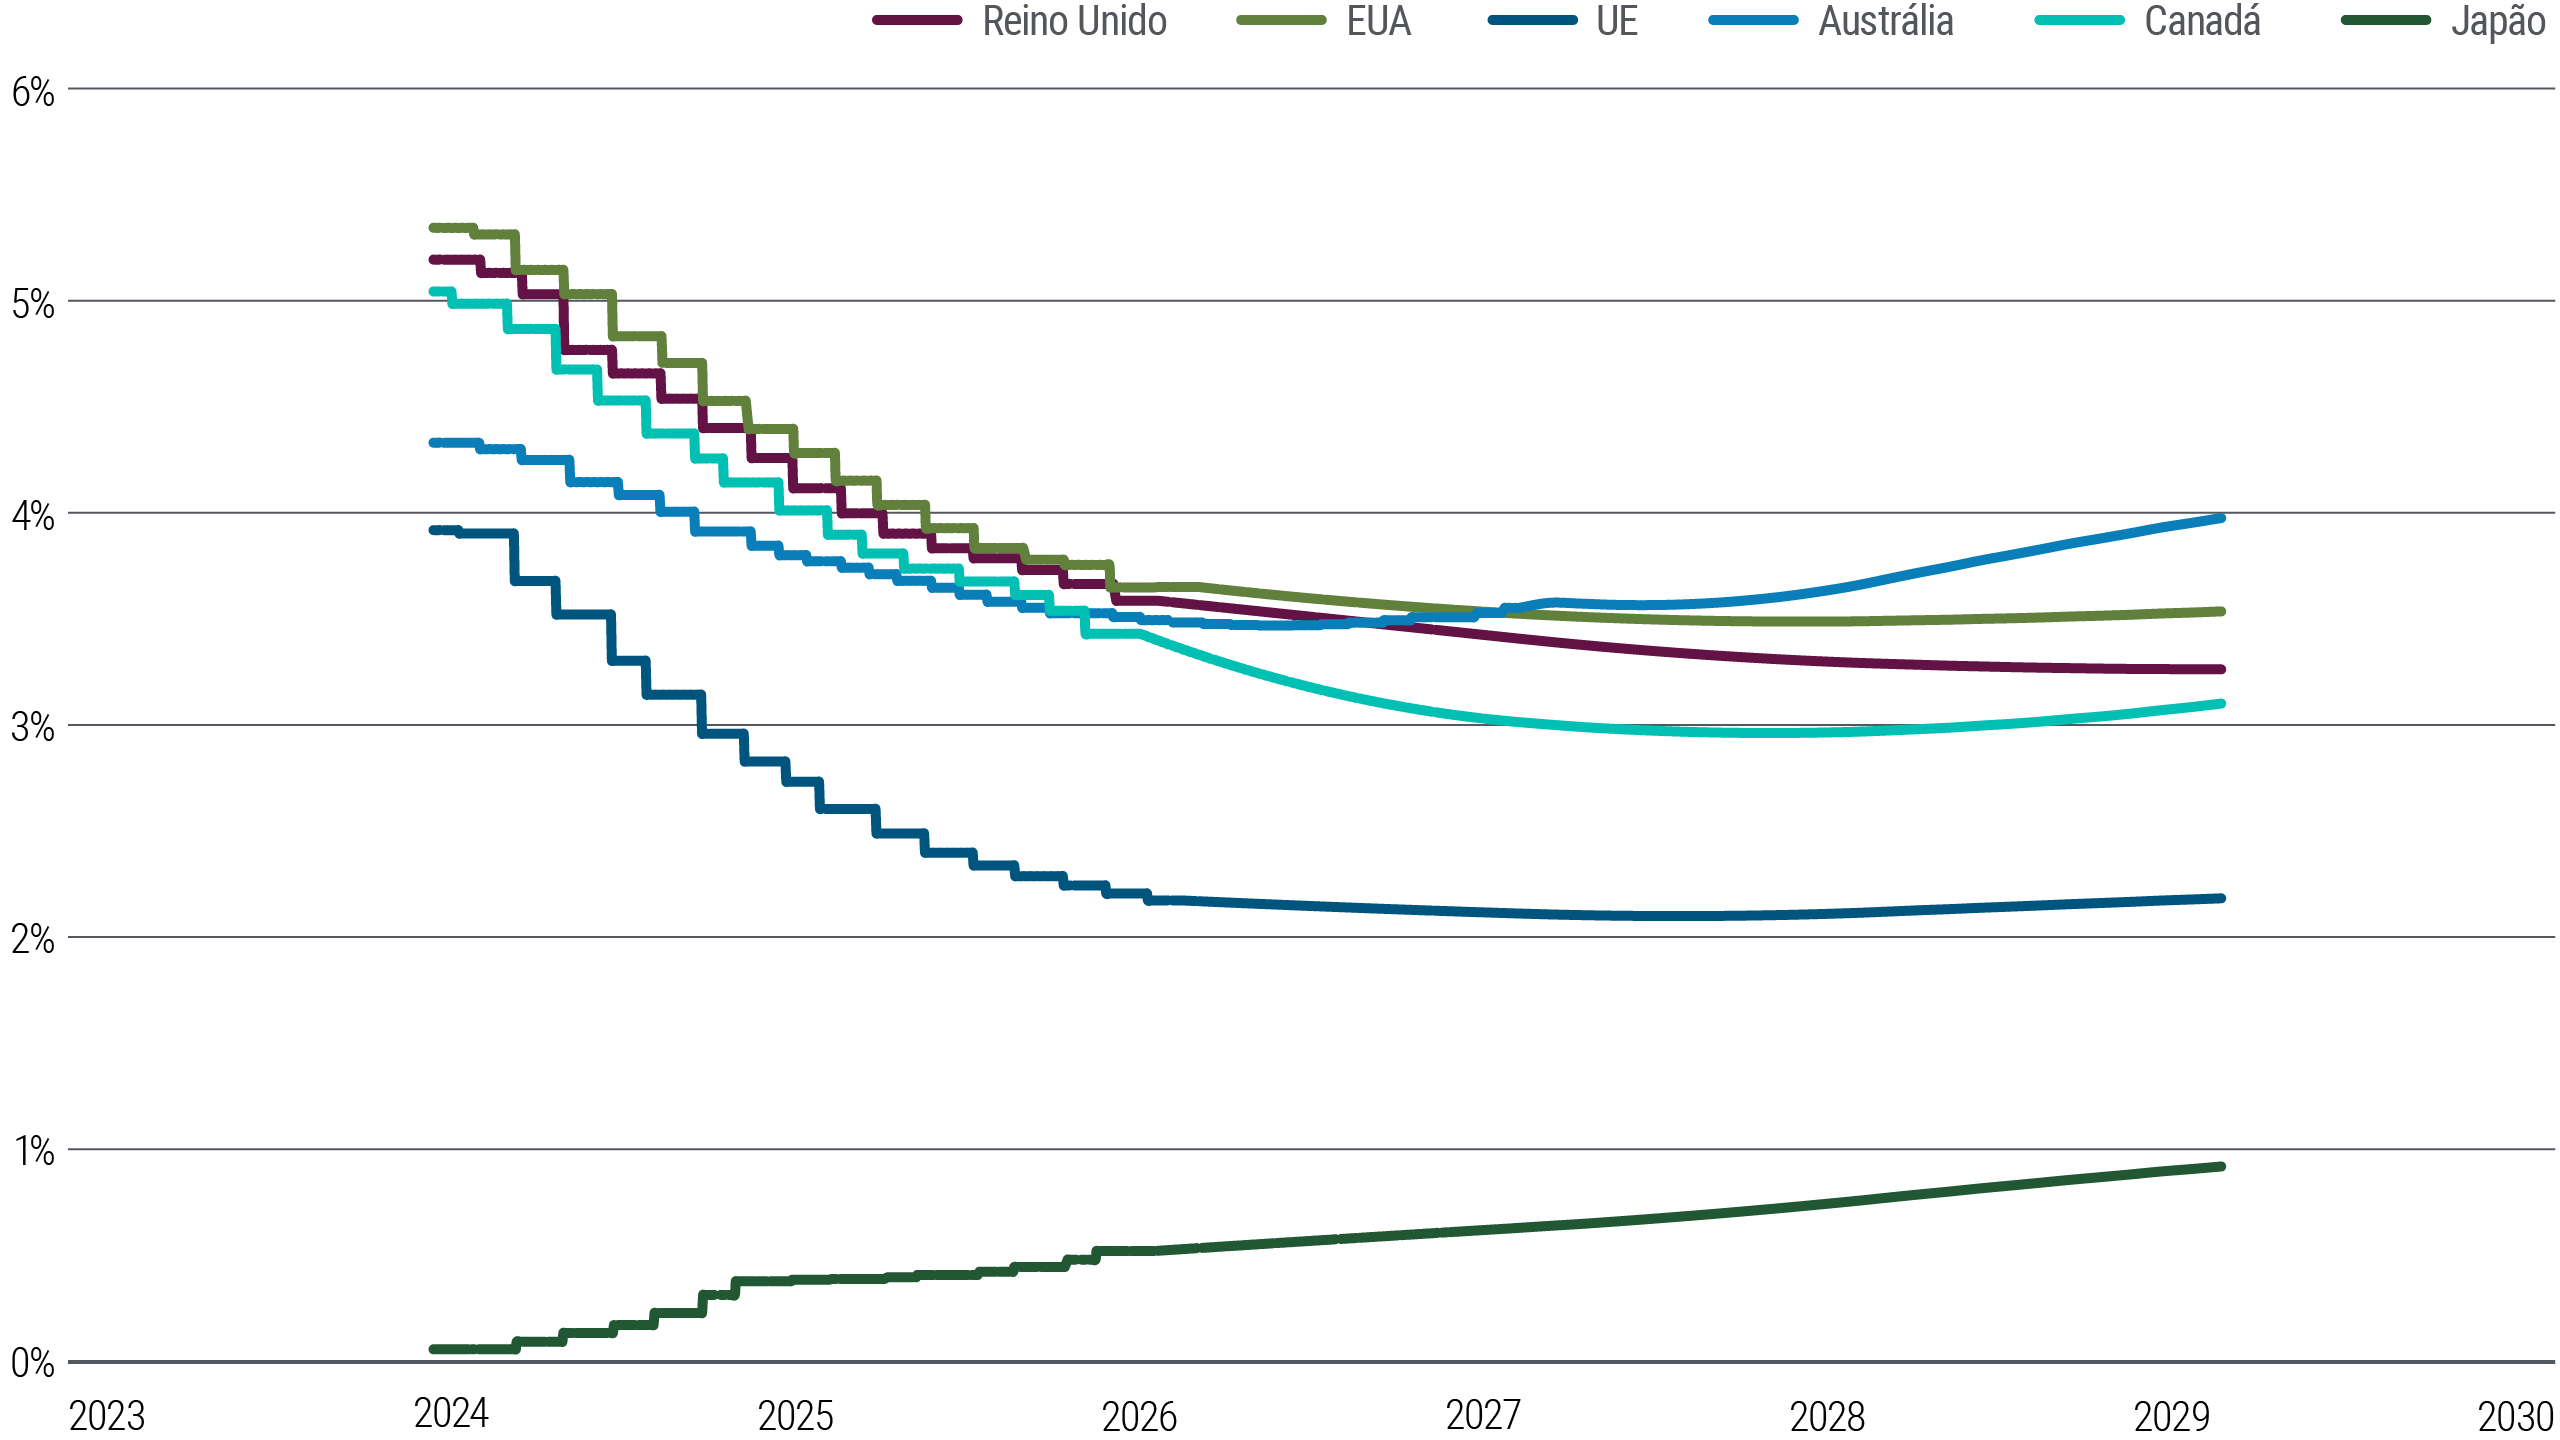 A Figura 5 é um gráfico de linhas que mostra a precificação atual (março de 2024) dos futuros de juros de curto prazo nos EUA, Zona do Euro, Reino Unido, Japão, Austrália e Canadá até o início de 2029, como uma representação das estimativas do mercado para a taxa de juros terminal. Os mercados estão precificando uma queda gradual nos futuros de juros de curto prazo pelo menos até 2026 em todas essas economias, exceto no Japão, antes de se tornarem mais estáveis nos anos finais. Os contratos futuros para 2029 estão cotados em cerca de 3,6% nos EUA e de 2,2% na Zona do Euro. Os mercados futuros do Japão sugerem um aumento gradual e contínuo a partir do nível atual, pouco acima de 0%.